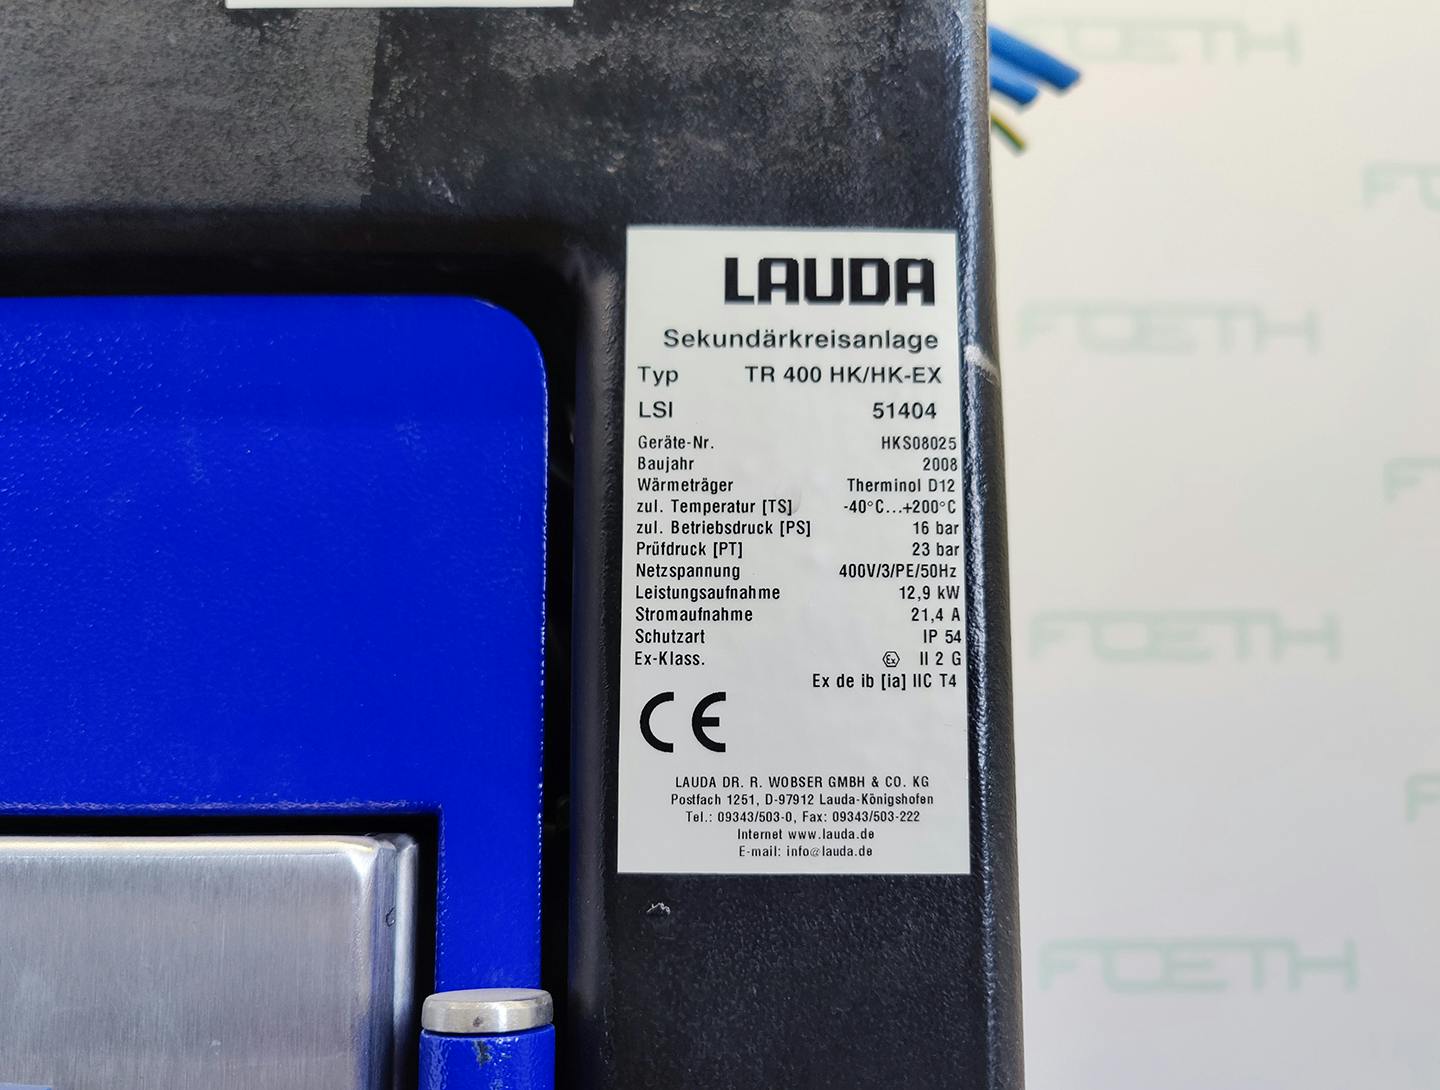 Lauda TR400 HK/HK-EX "secondary circuit system" - Temperature control unit - image 13